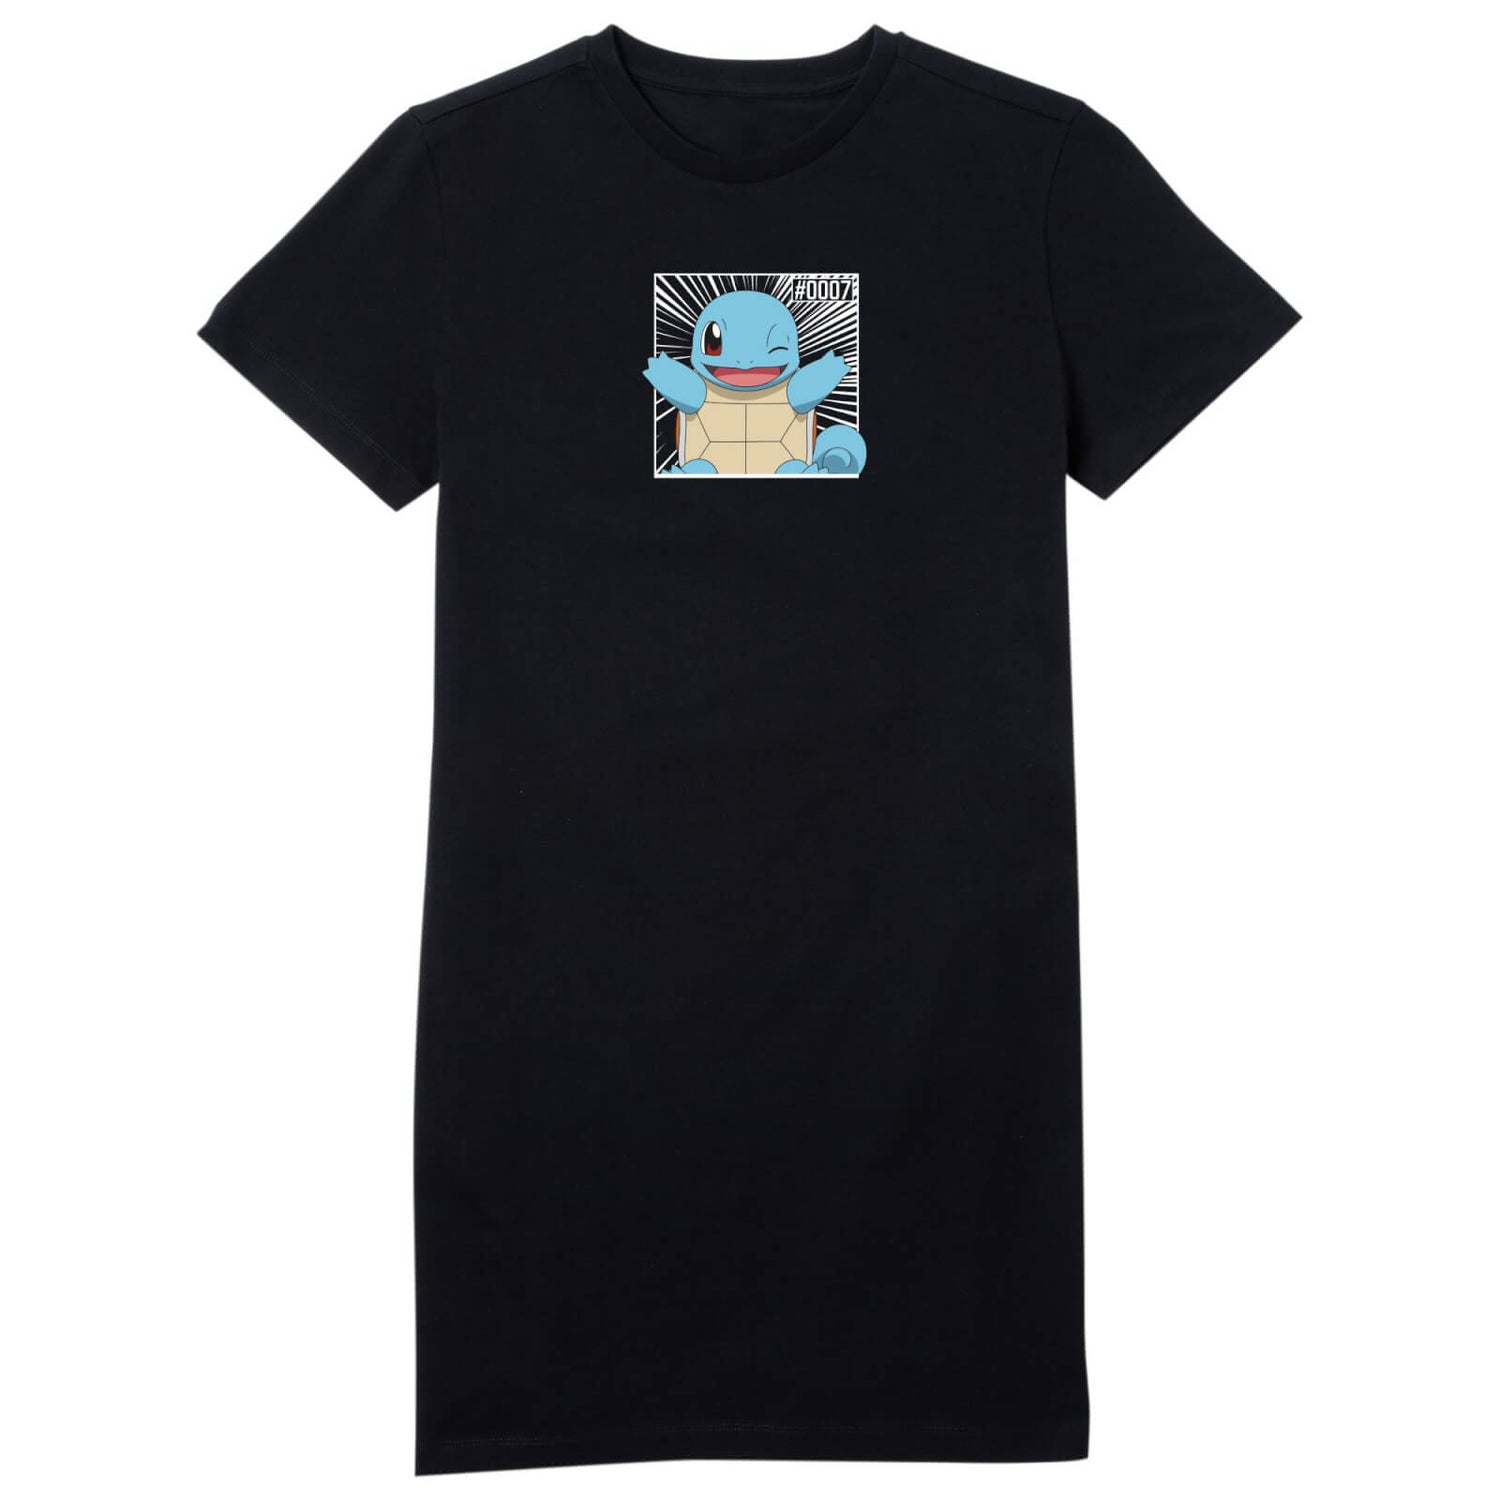 Pokémon Pokédex Squirtle #0007 Women's T-Shirt Dress - Black